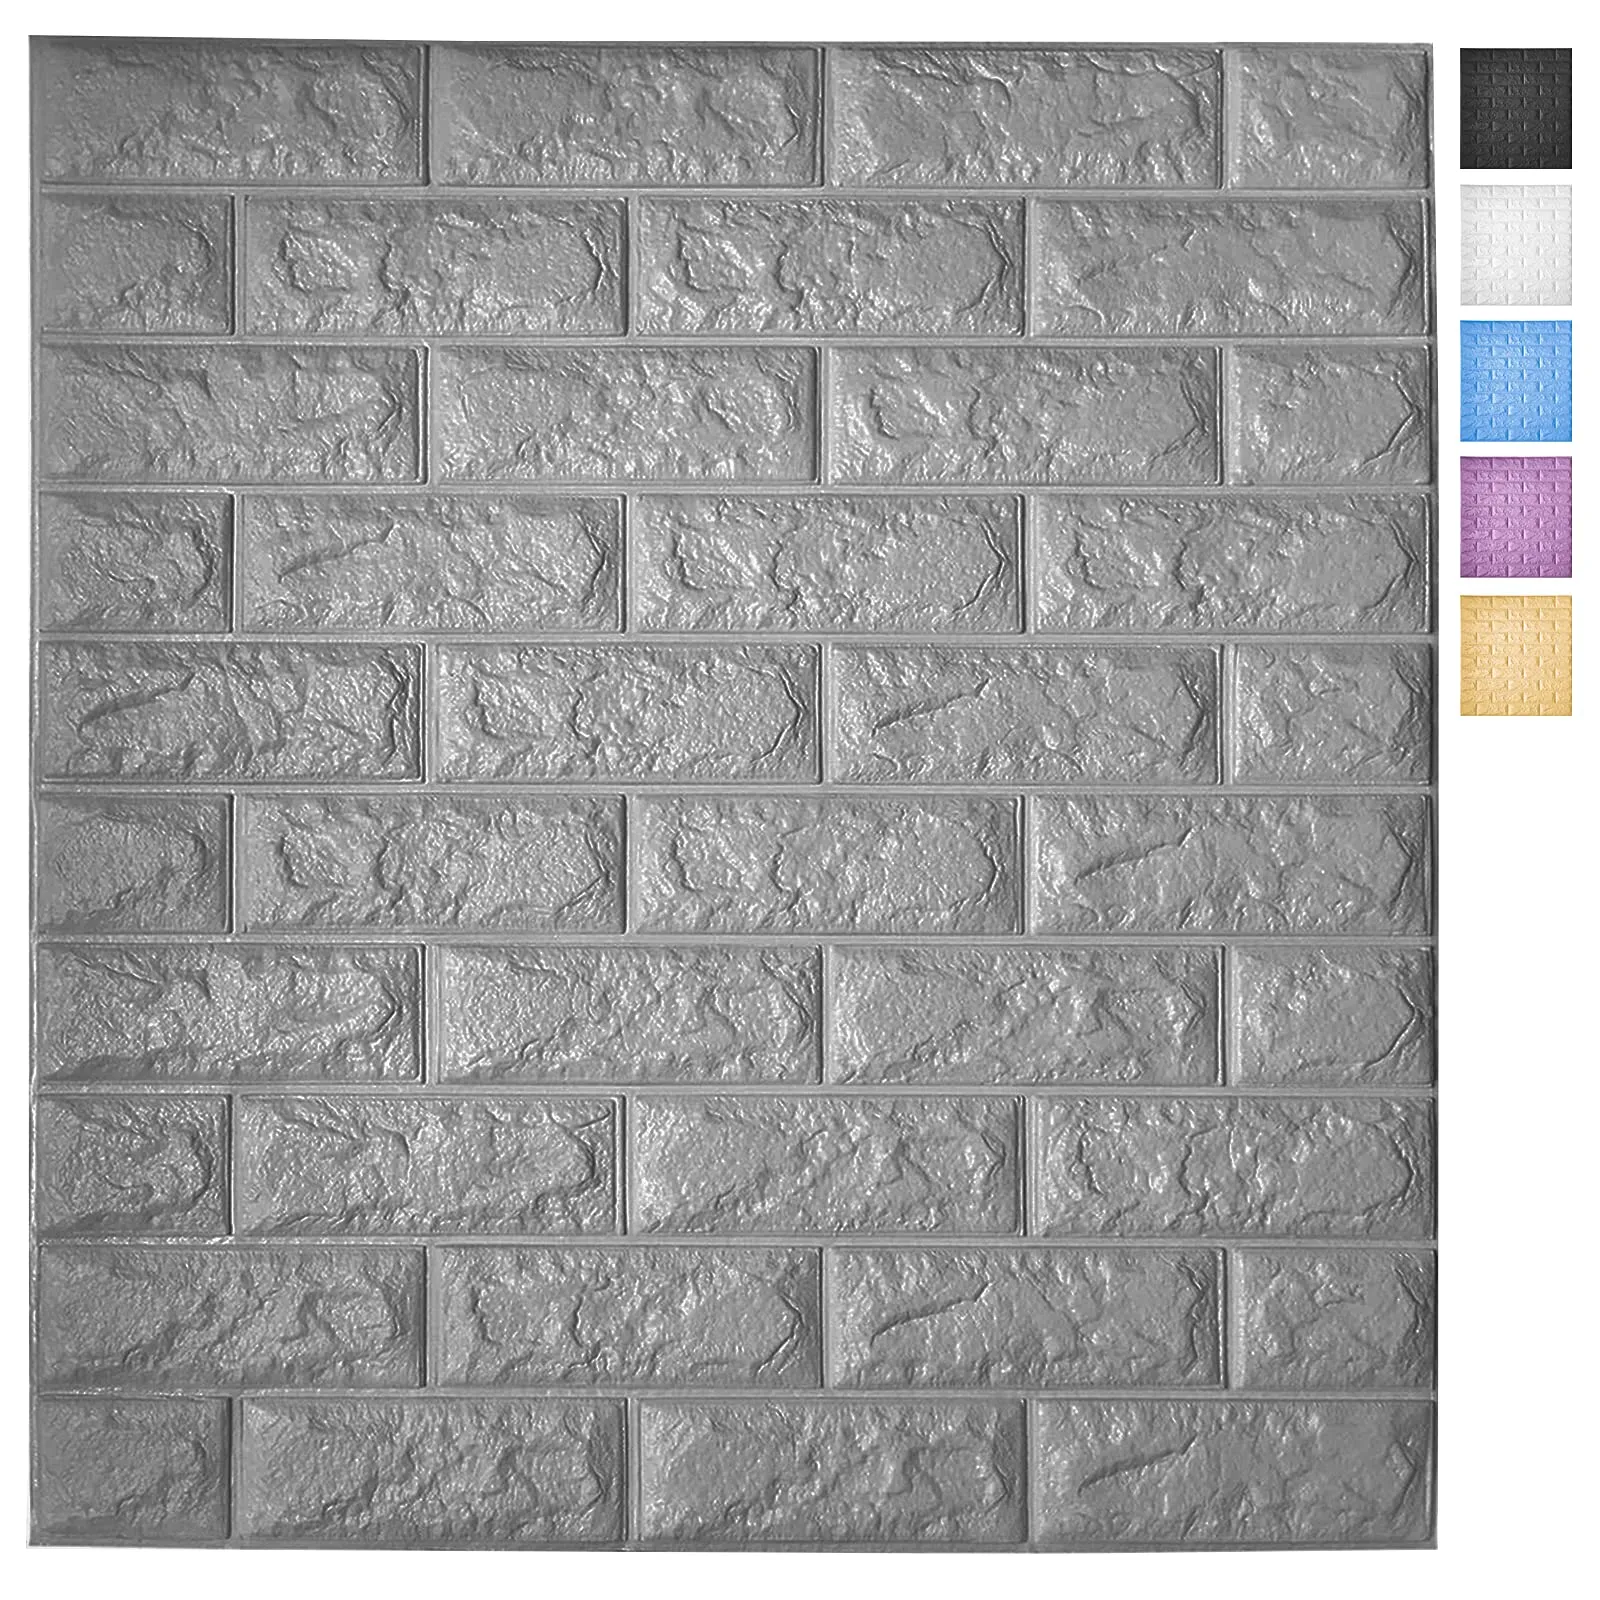 Art3D 5 팩 껍질 및 스틱 3D 벽지 패널 내부 벽 장식 셀프 접착 폼 벽돌 벽지 회색, 커버 29 sq.ft